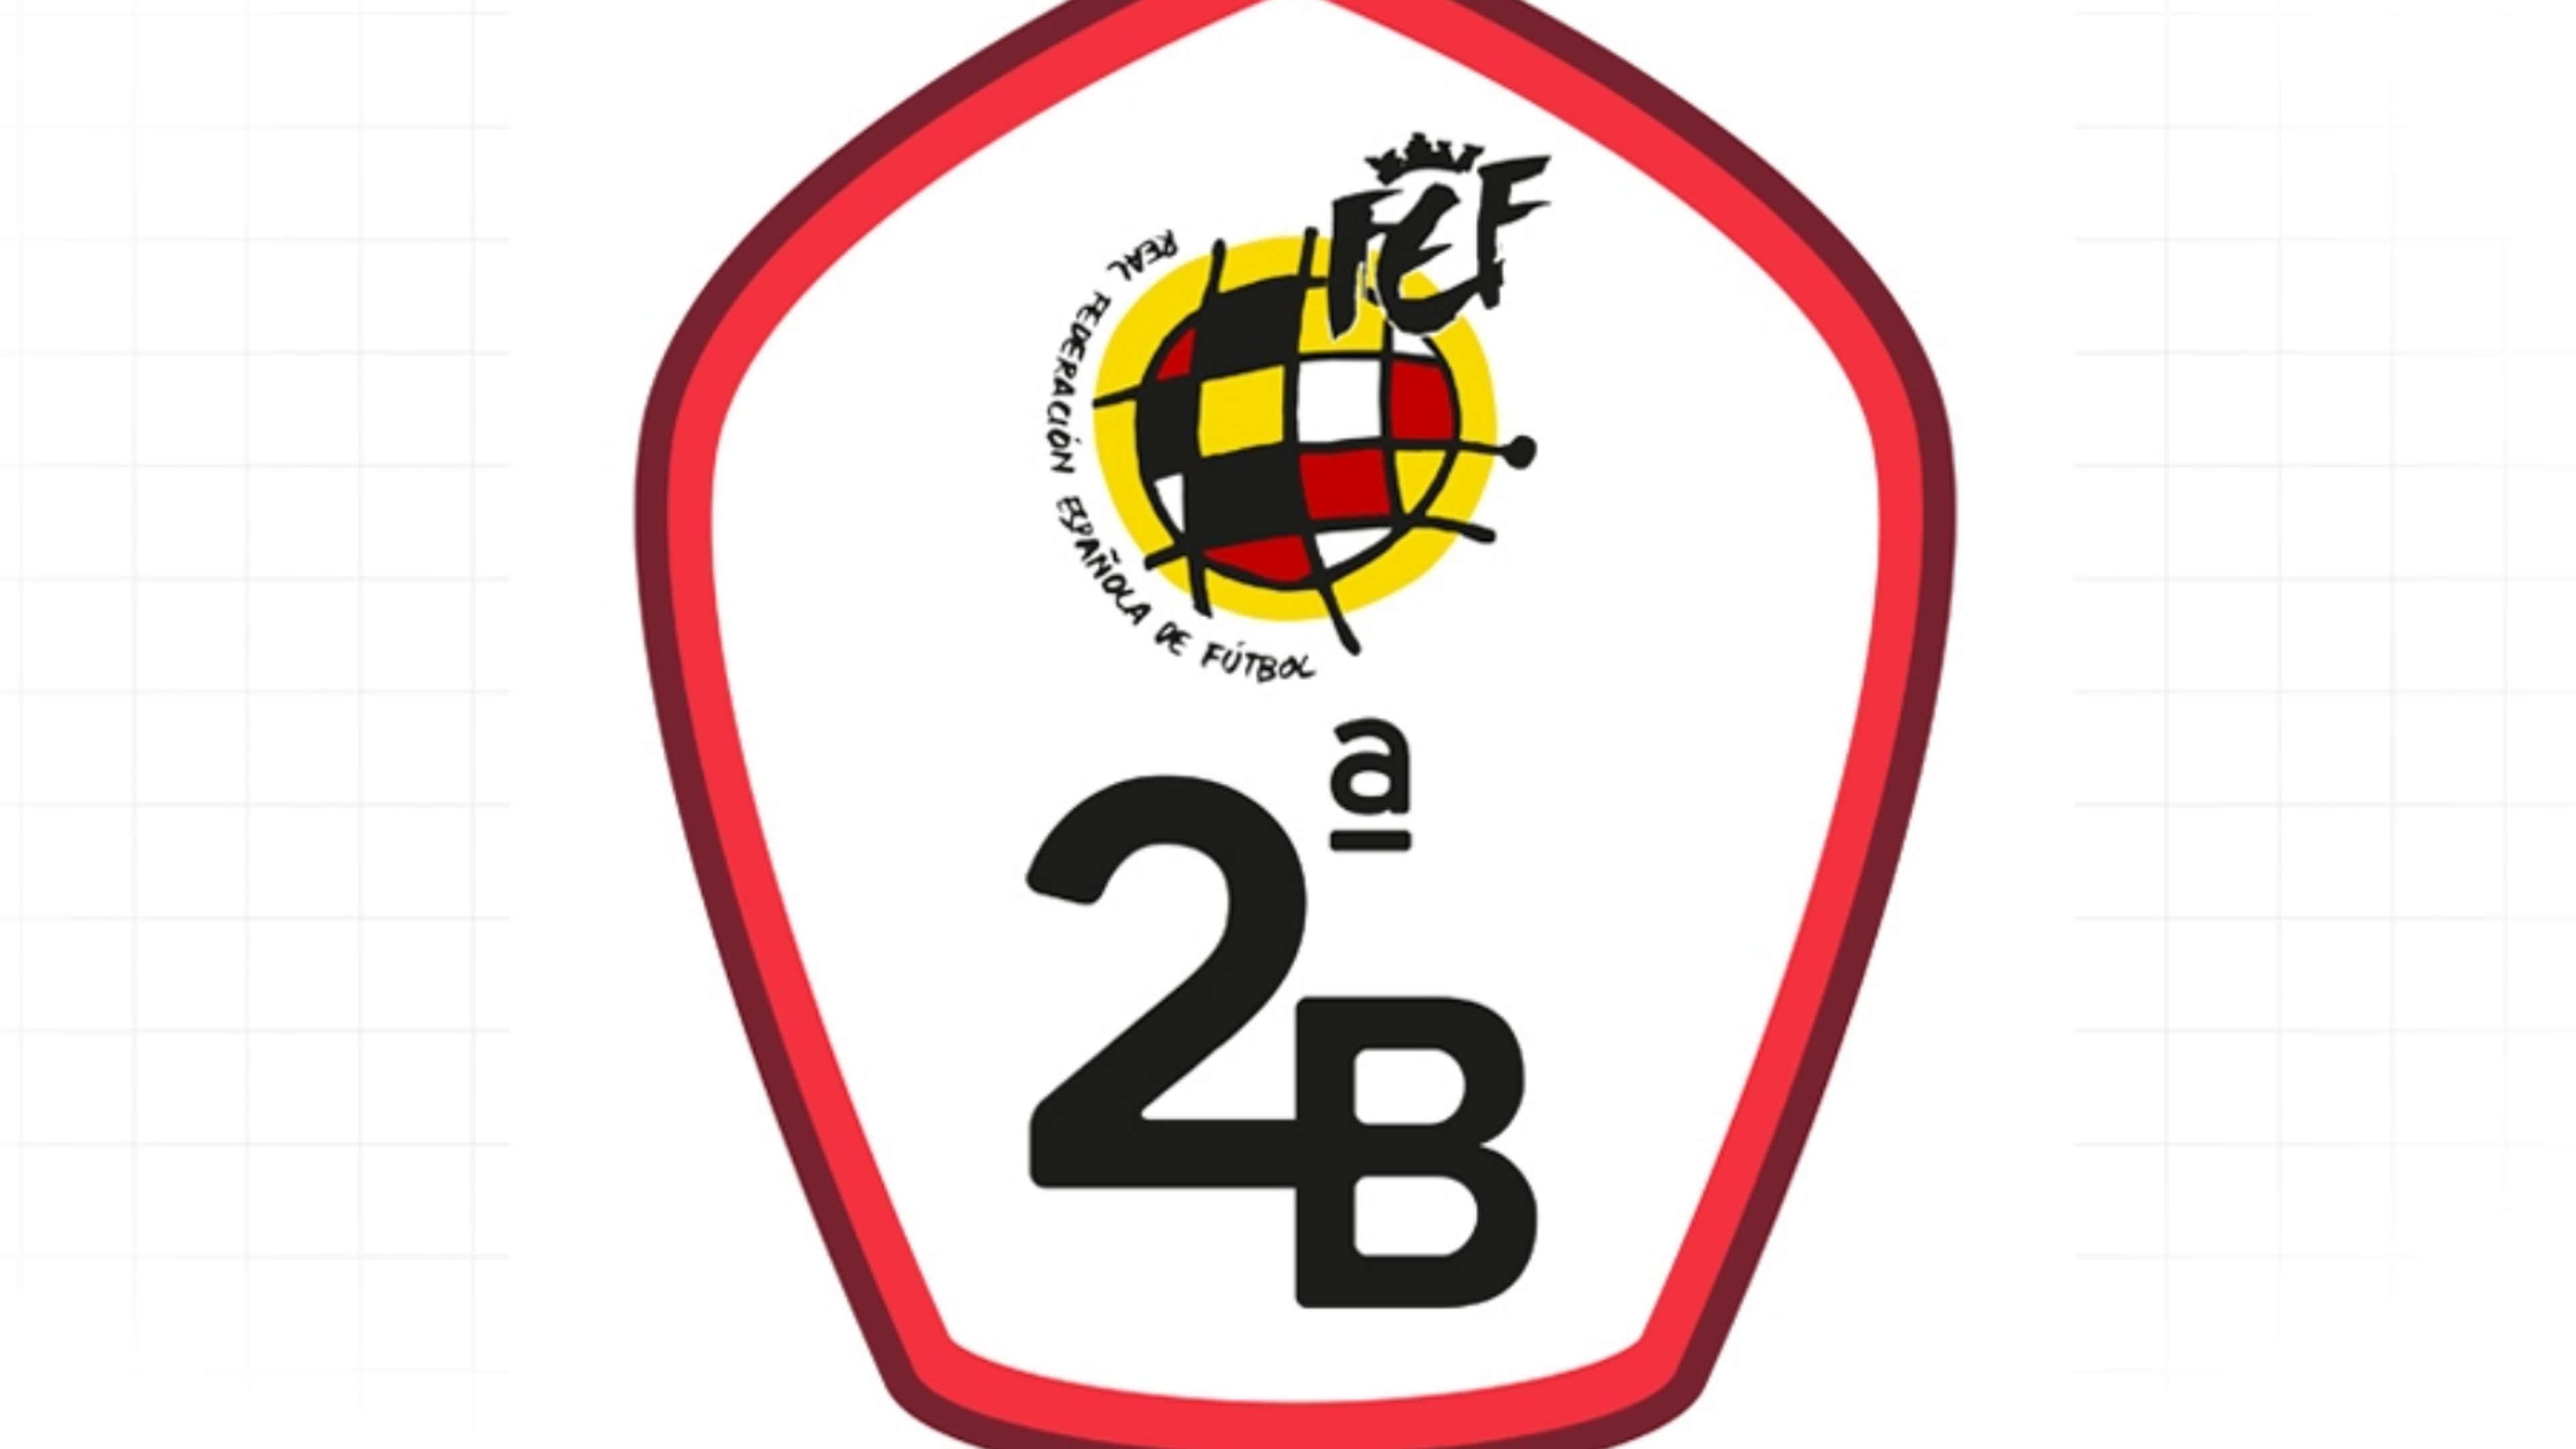 Así serán los División B la temporada 2020-21 | Goal.com Espana